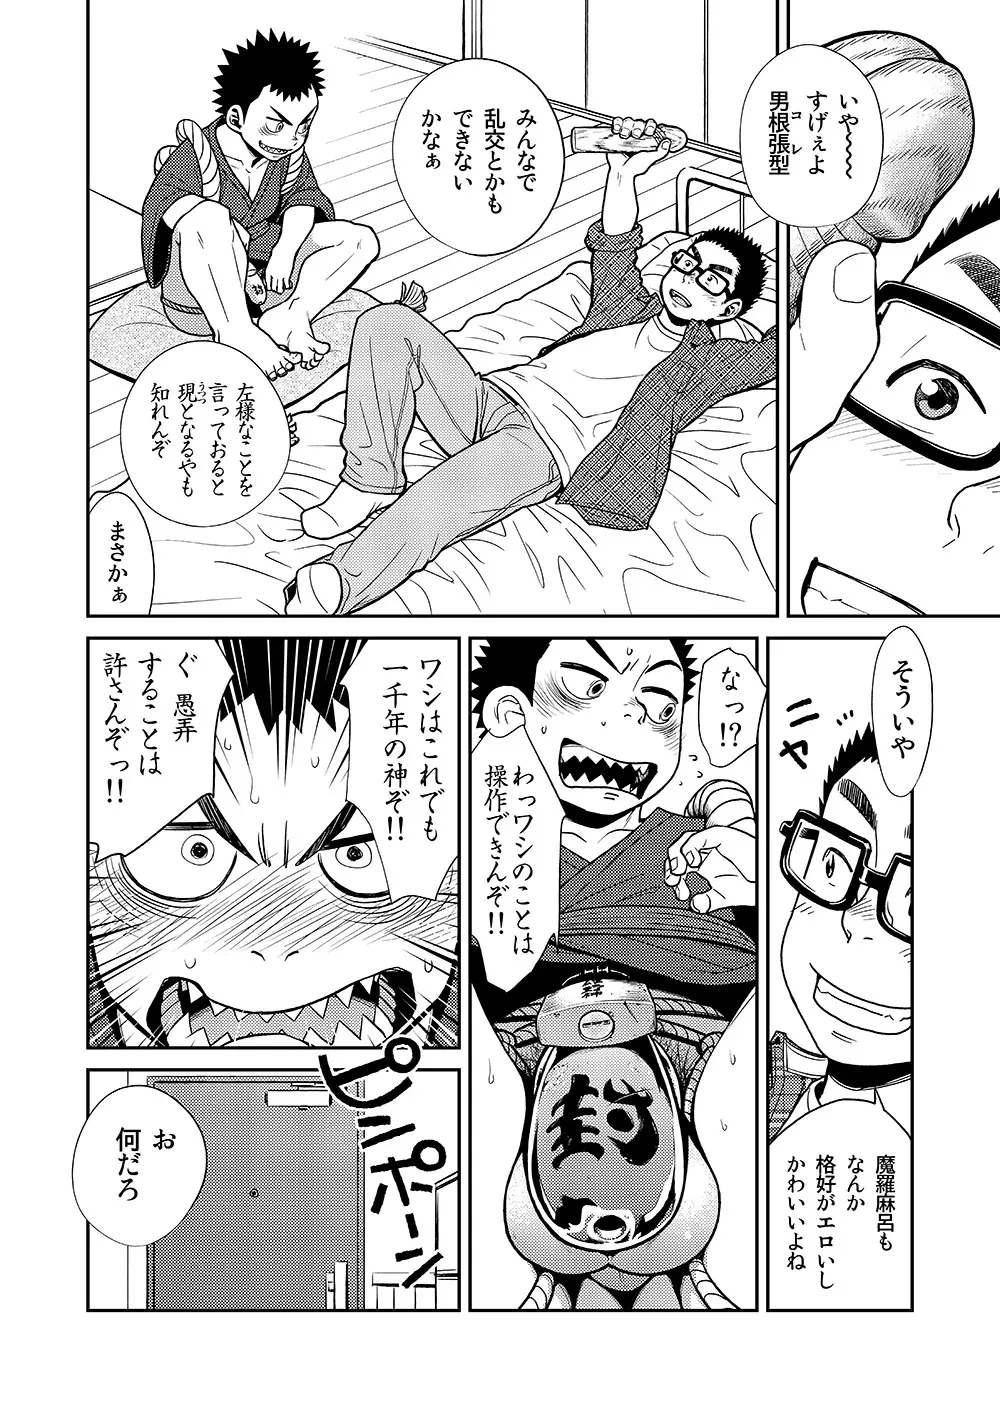 漫画少年ズーム VOL.11 & 12 46ページ